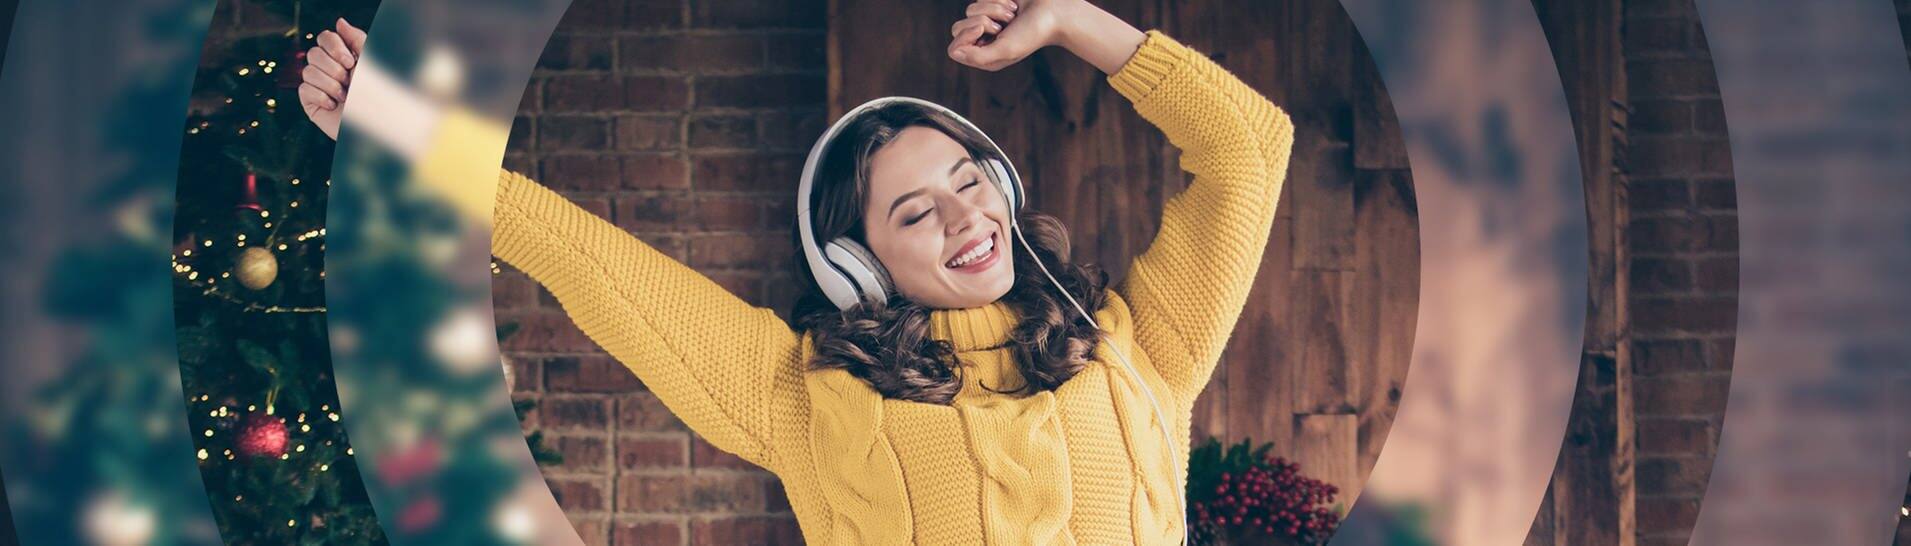 Eine junge Frau in einem gelben Pullover tanzt vor einem Weihnachtsbaum und hört Musik mit Kopfhörern. (Foto: Adobe Stock / deagreez)